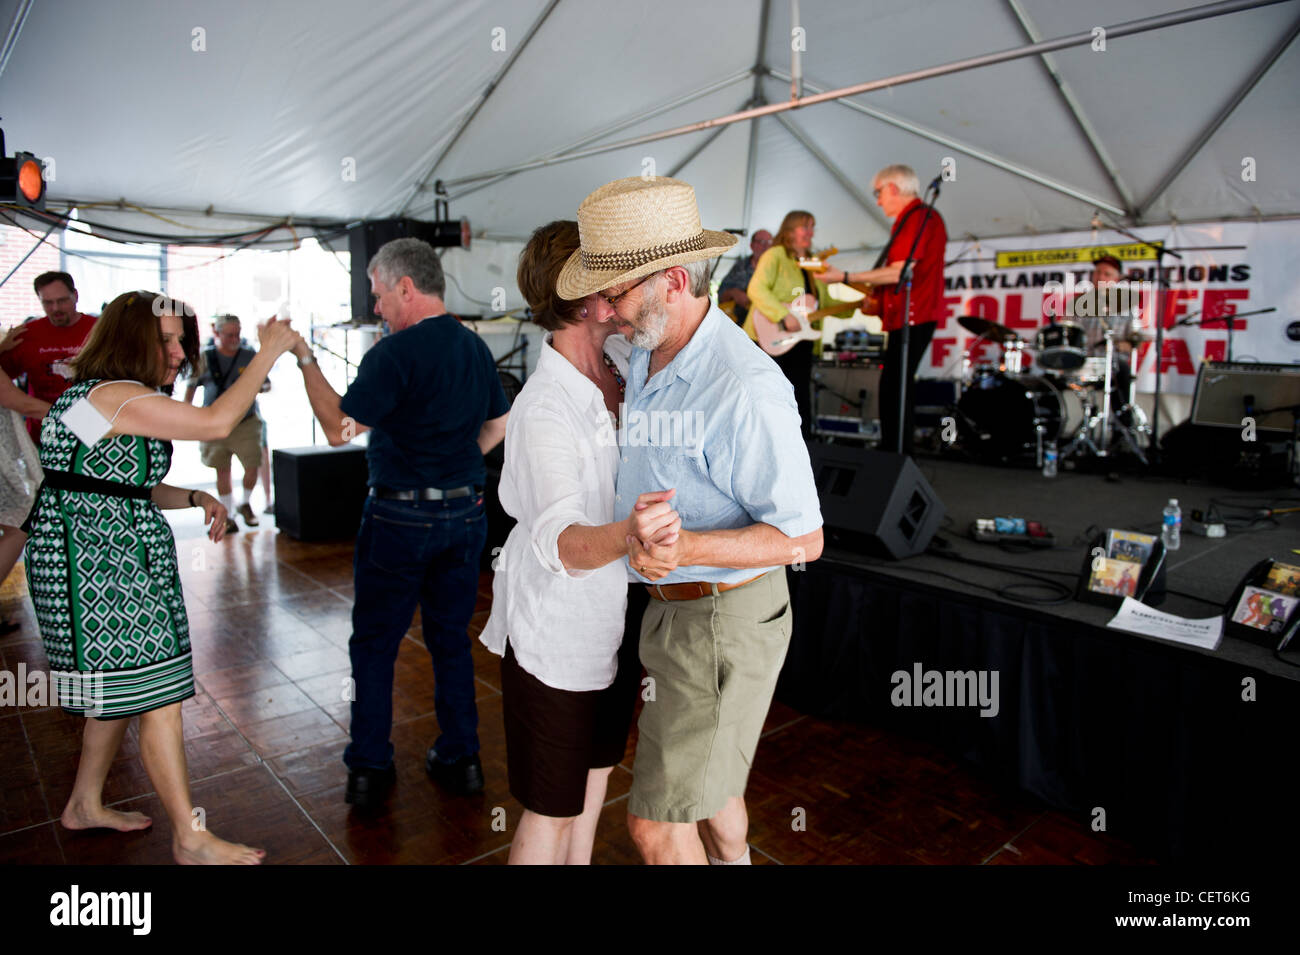 Bill Kirchen y Marcy Marxer dar espectáculo vivo en Baltimore y la gente baila al son de la música Foto de stock